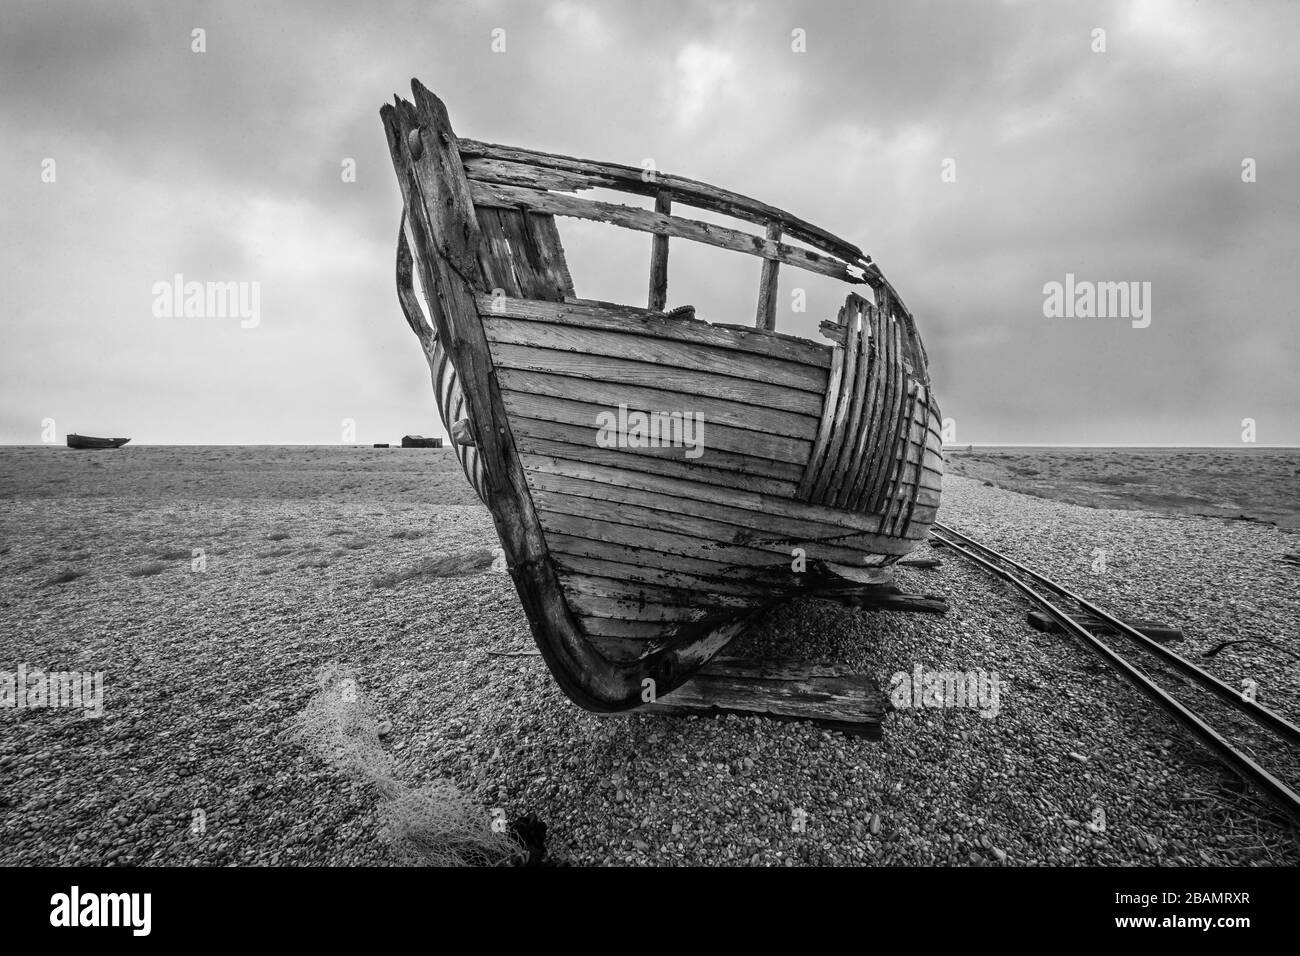 Ein Boot auf dem verlassenen Dungeness Beach in England, wo ein verfallener Weltmenschen zurückblieb. Spektakulär krass und kompromisslos, aber auch schön. Stockfoto